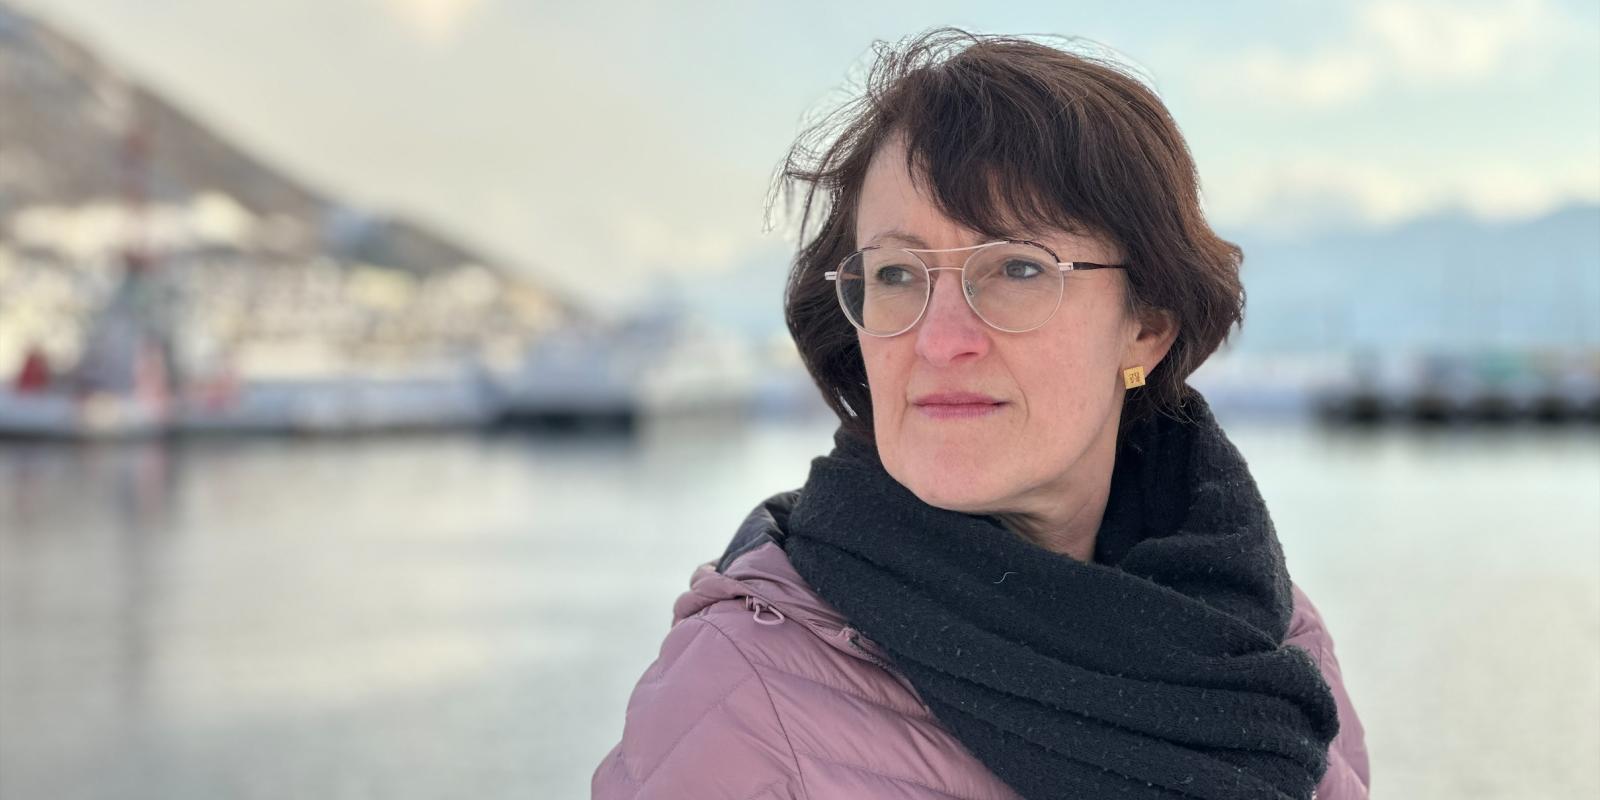 Barbara Wider Vellinga, ute foran hav og himmel i Tromsøs havn